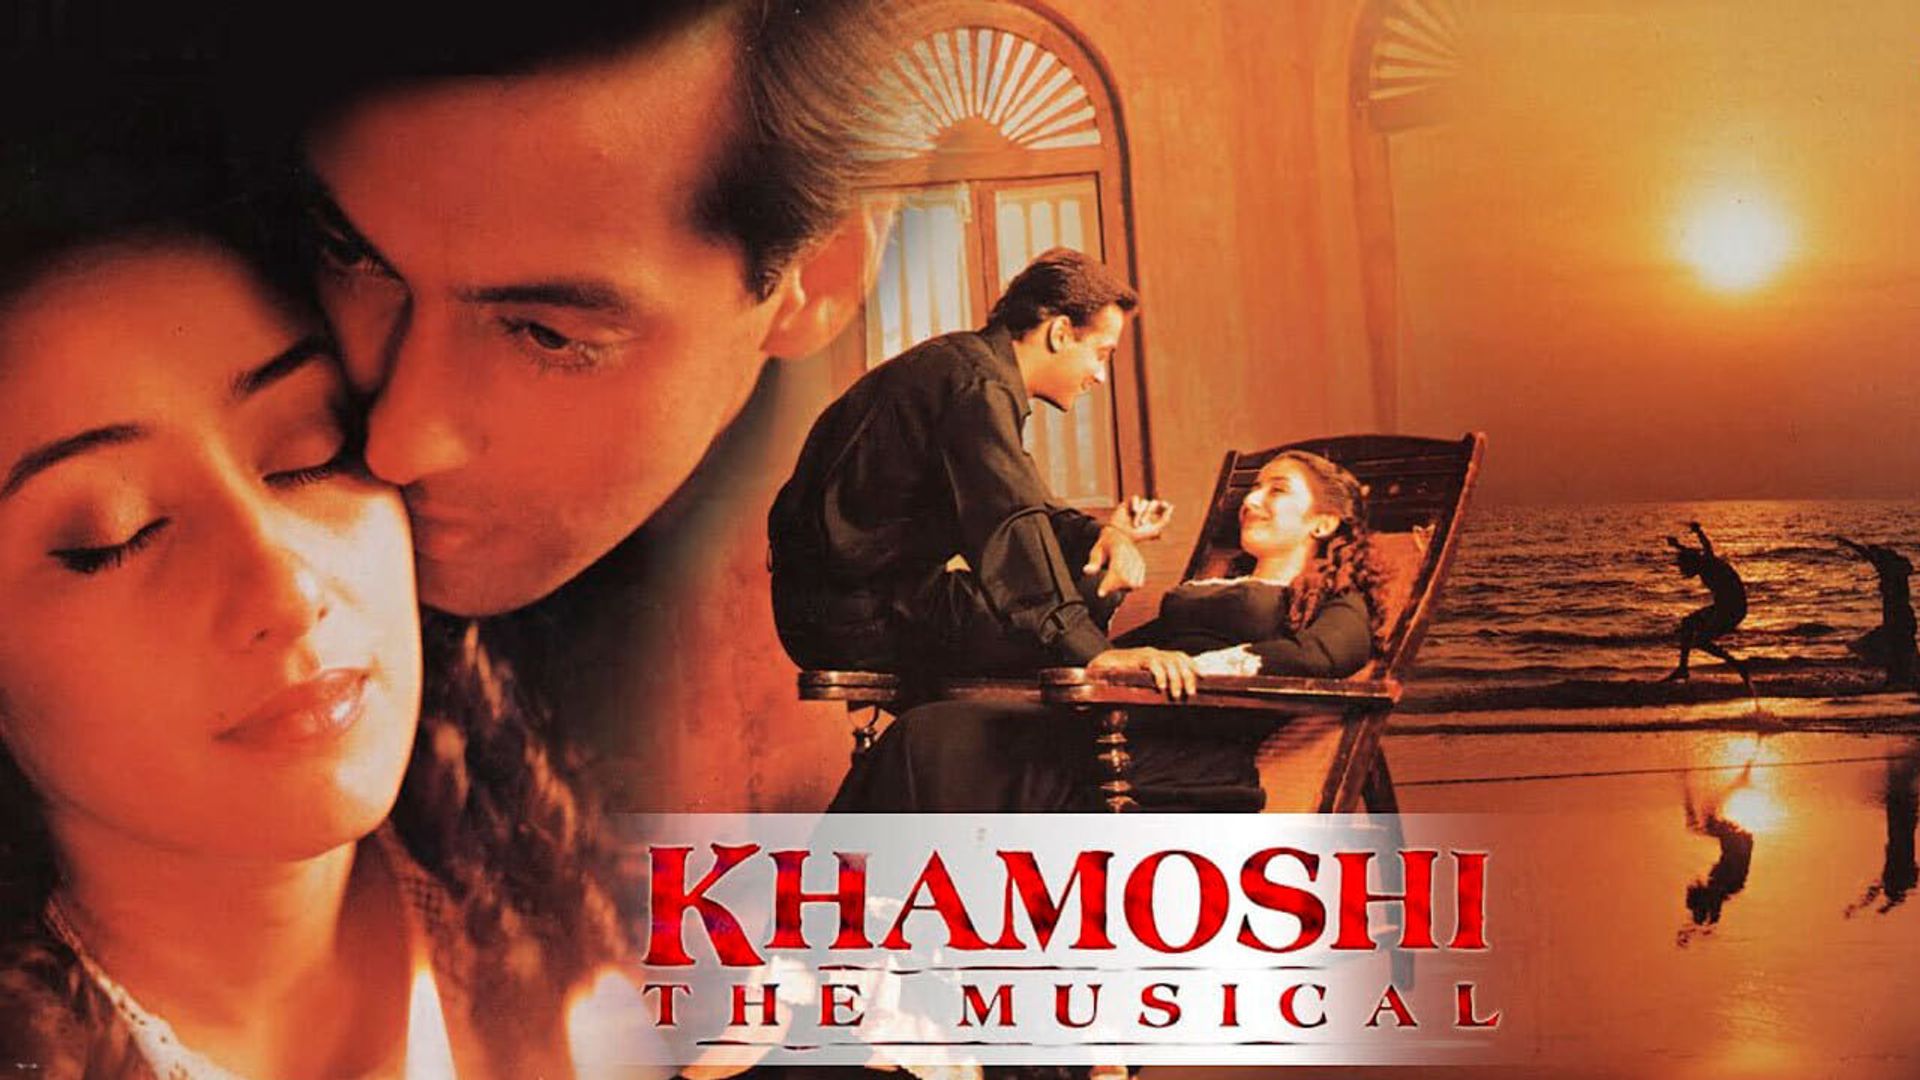 Khamoshi the Musical background